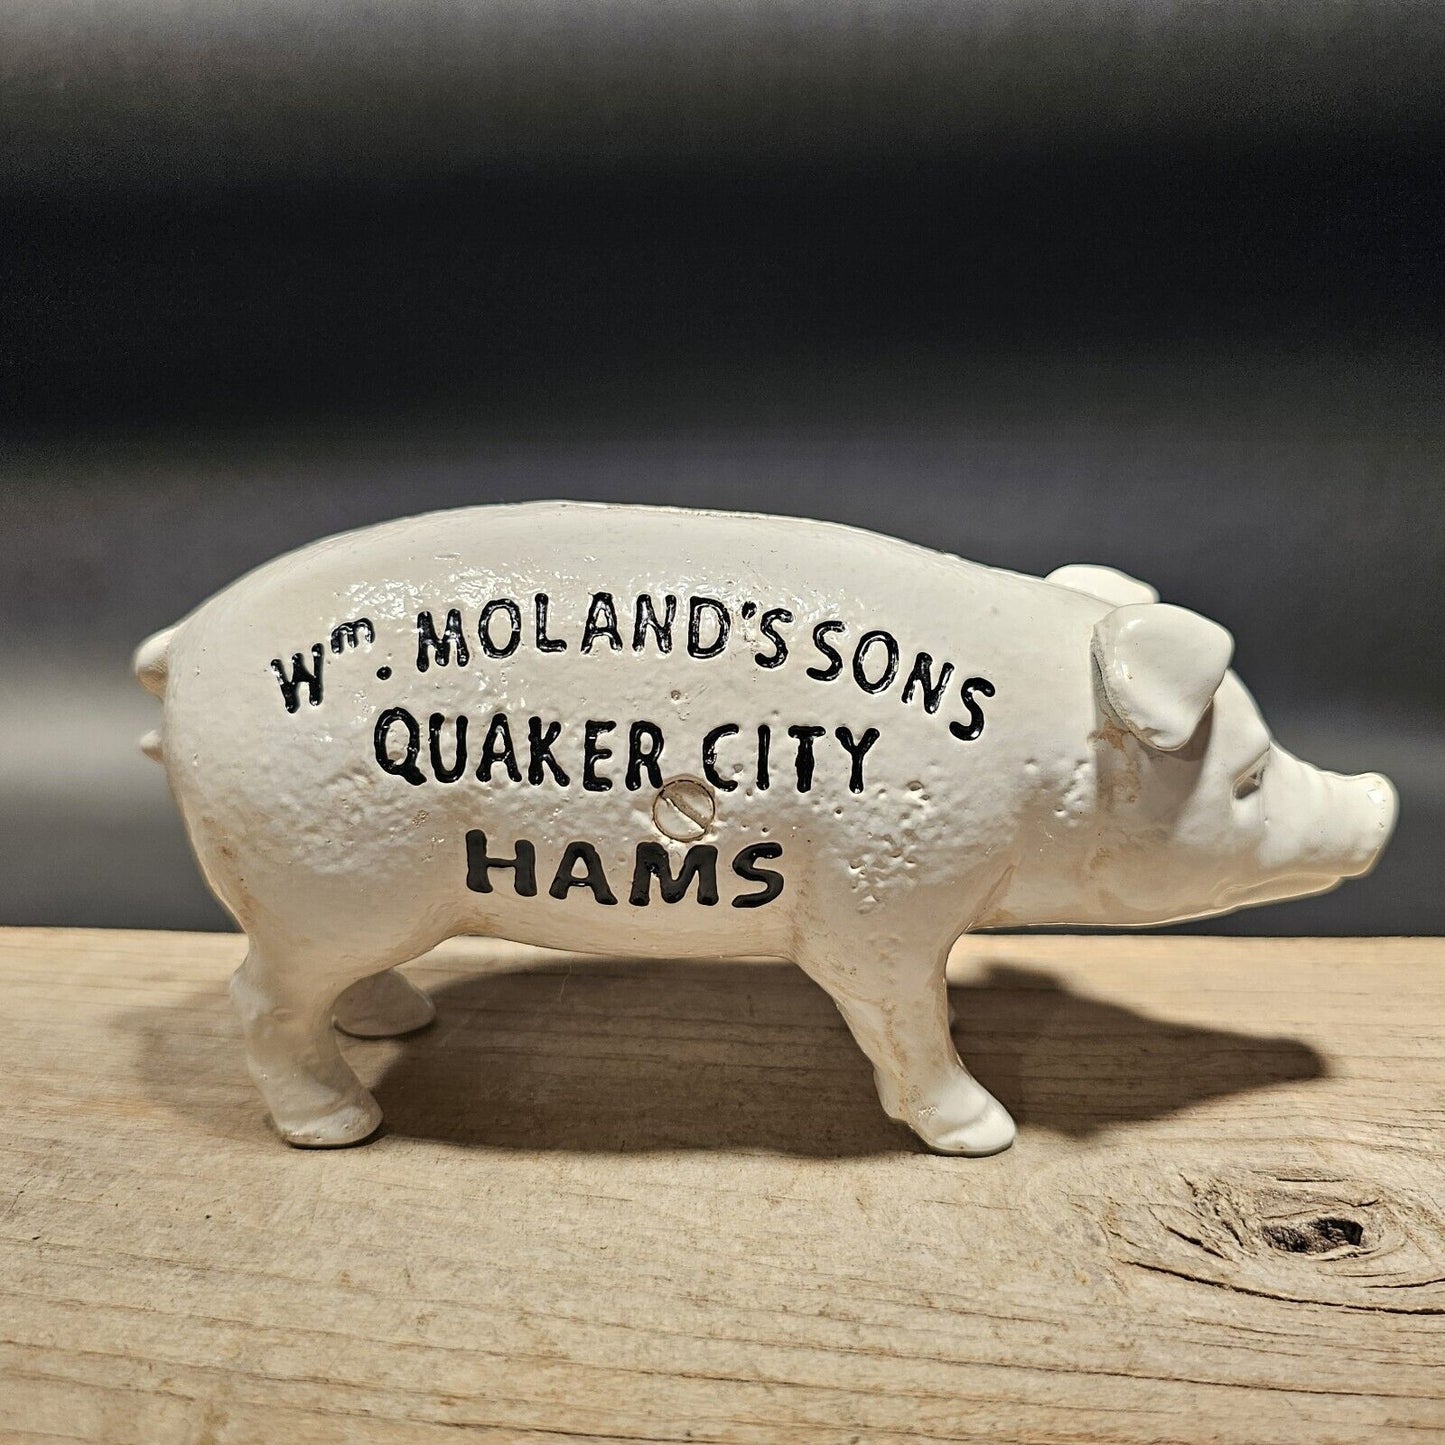 Antique Vintage Style Cast Iron Quaker City Hams Pig Coin Bank